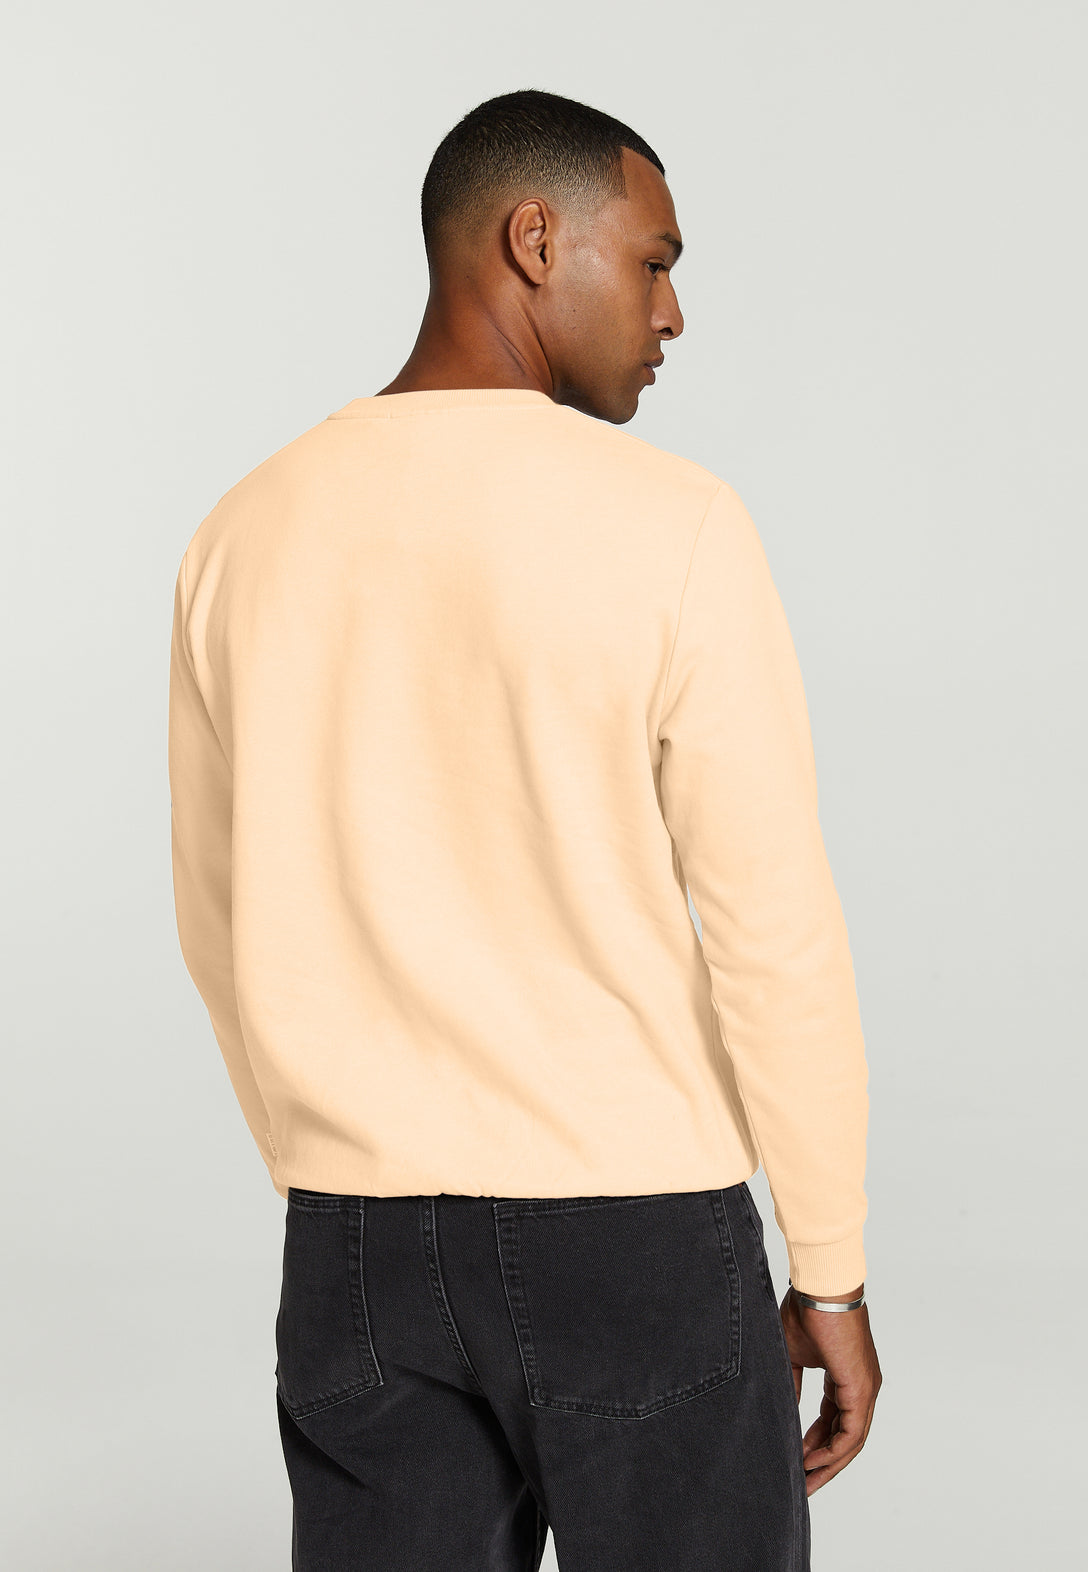 Unisex sunday sweater